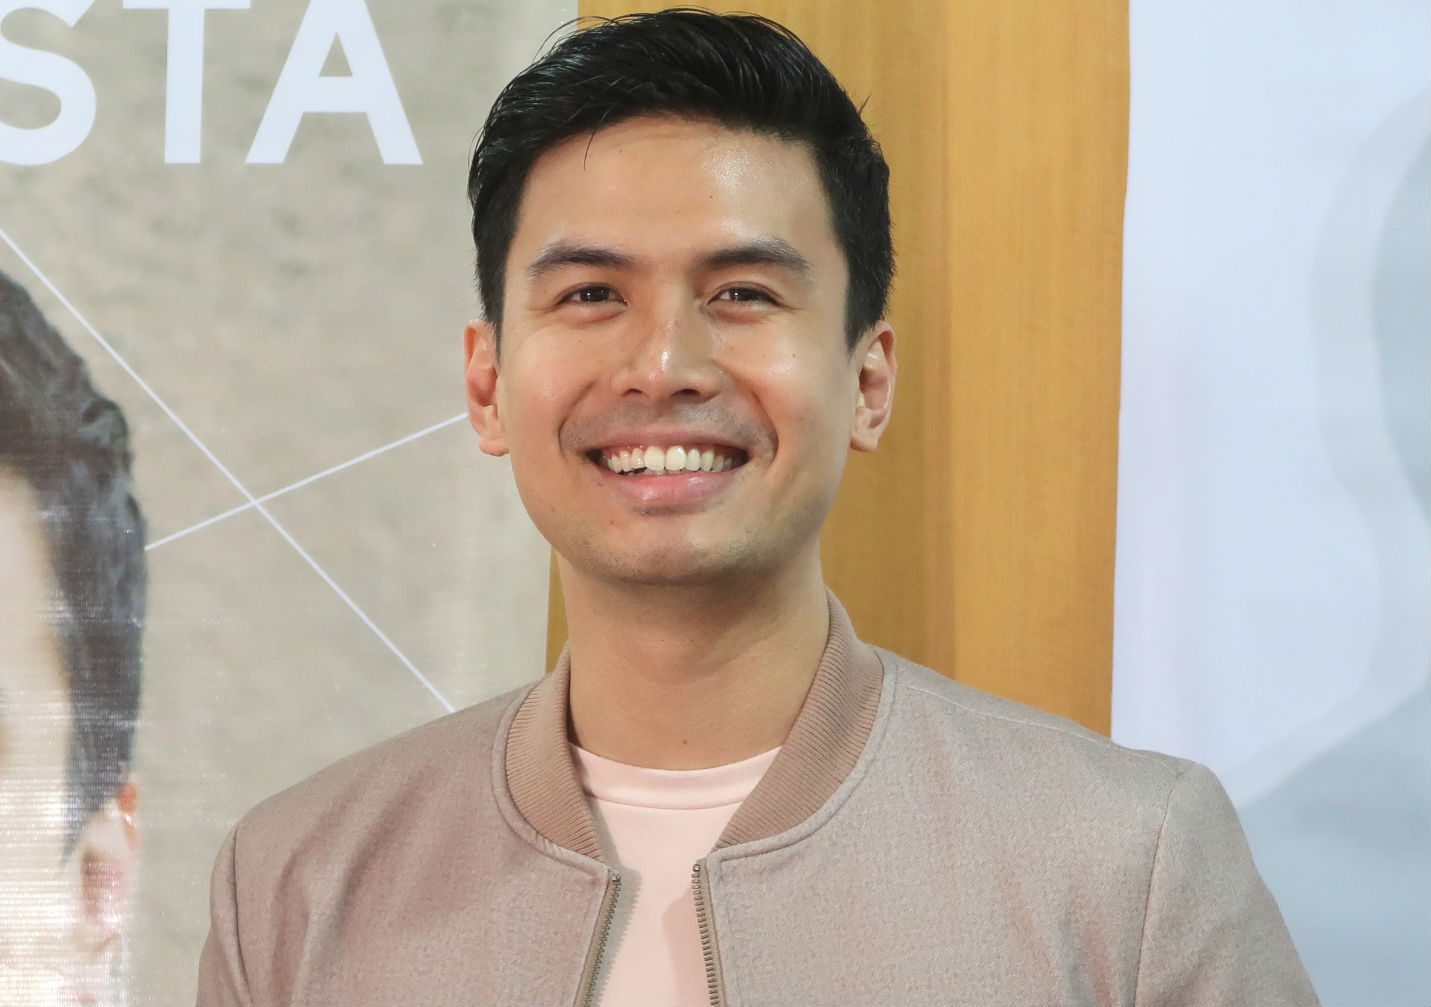 Christian Bautista on Rachelle Ann Go’s engagement, new album ‘Kapit’